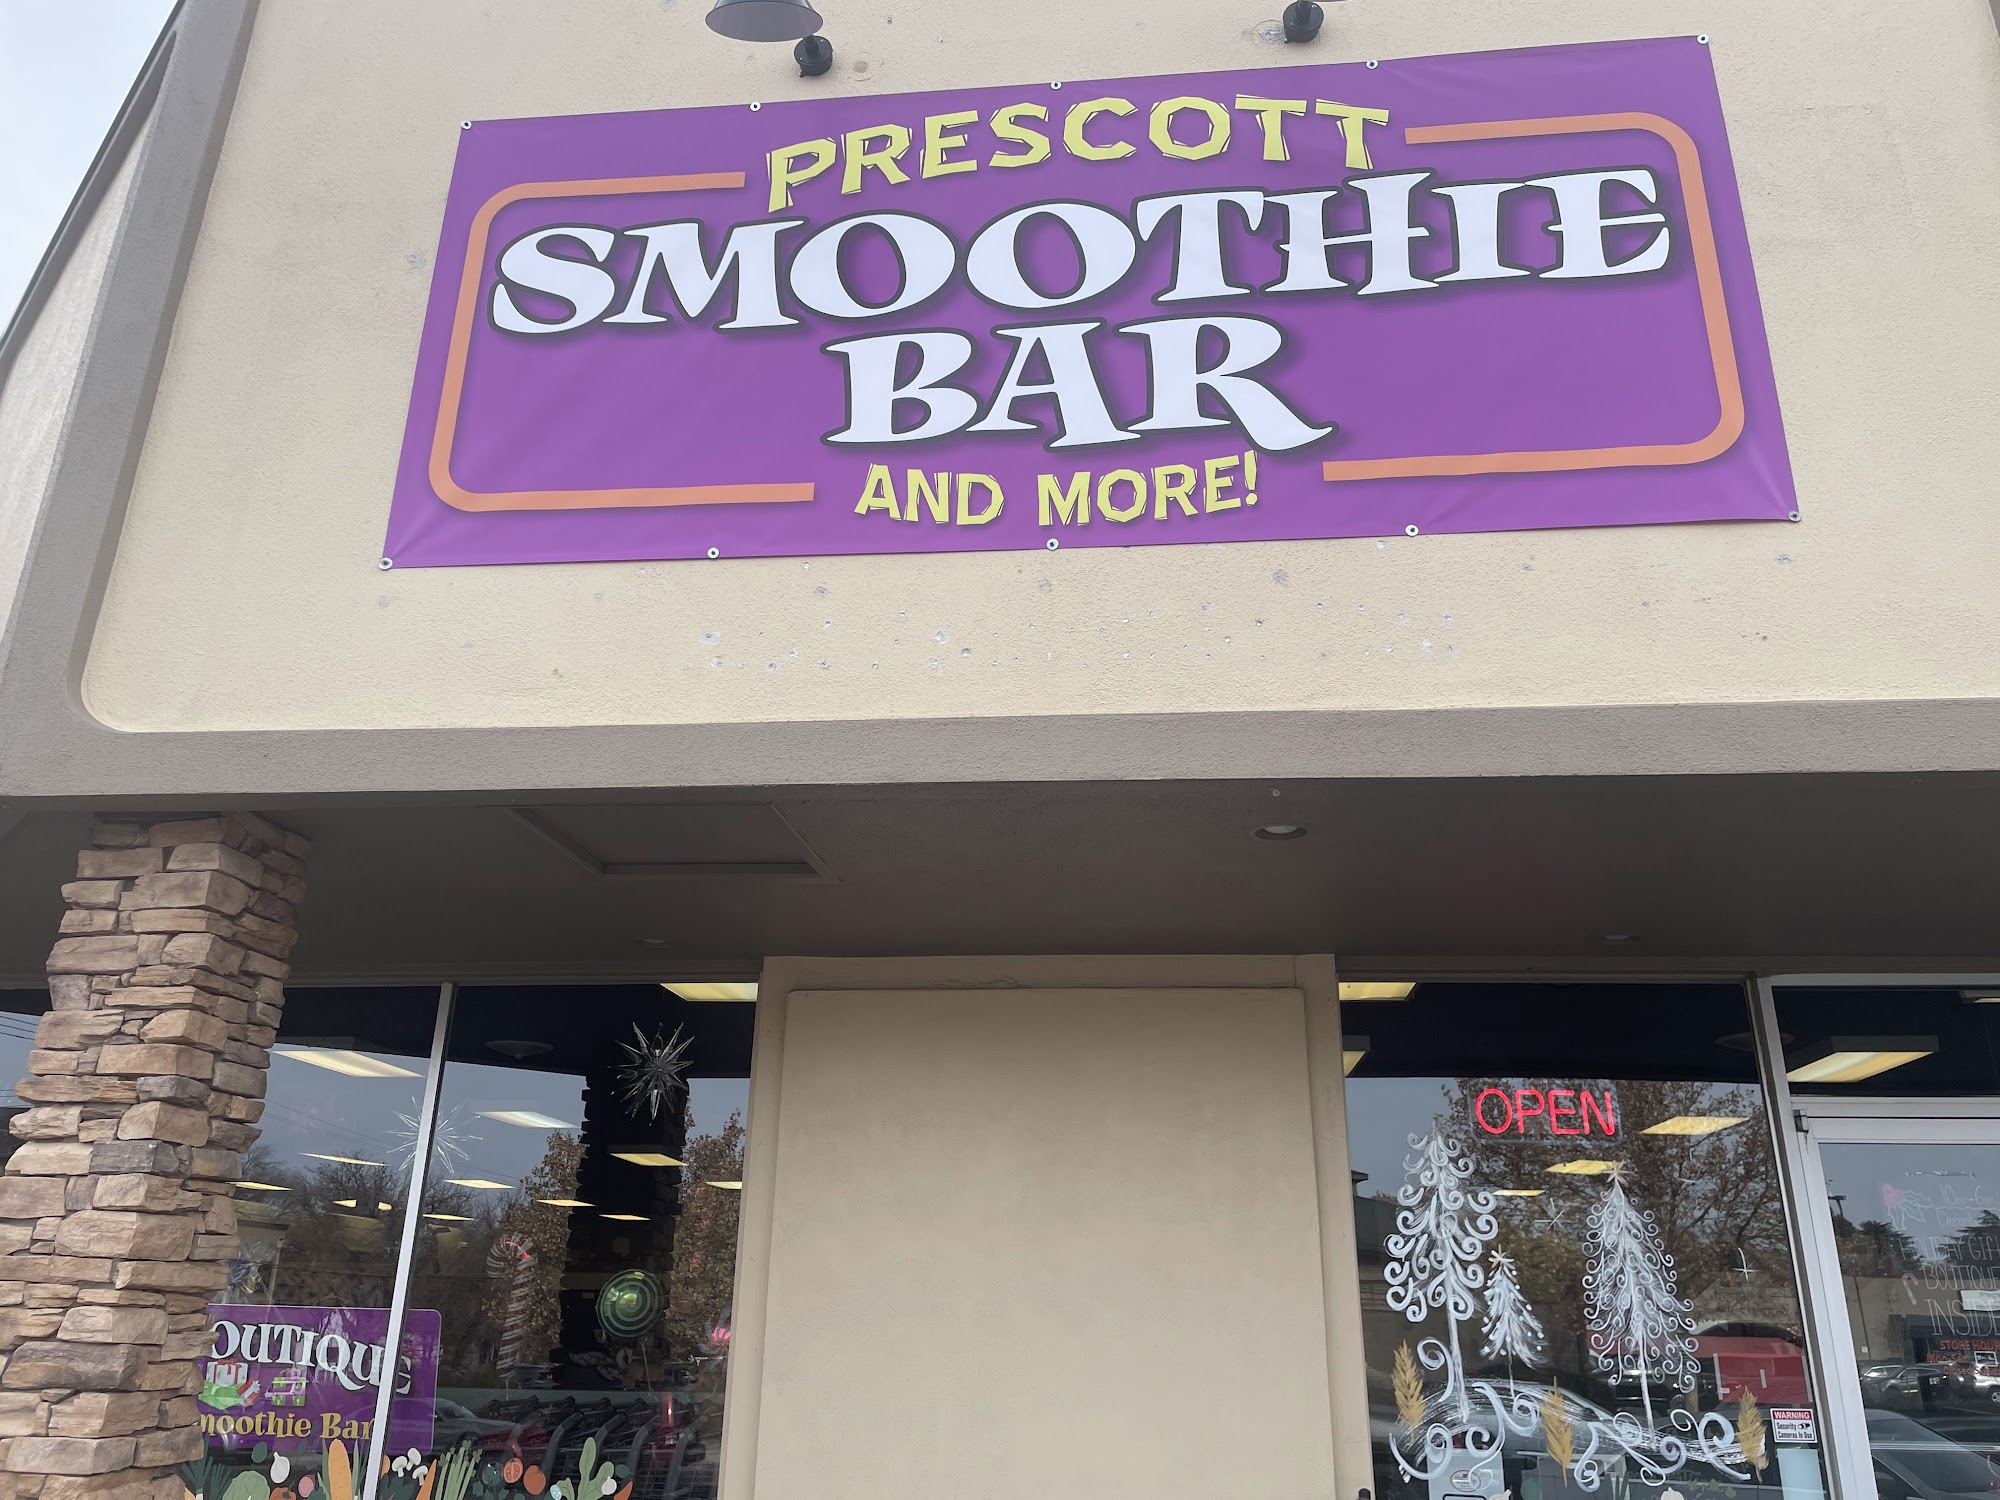 The Prescott Smoothie Bar and More